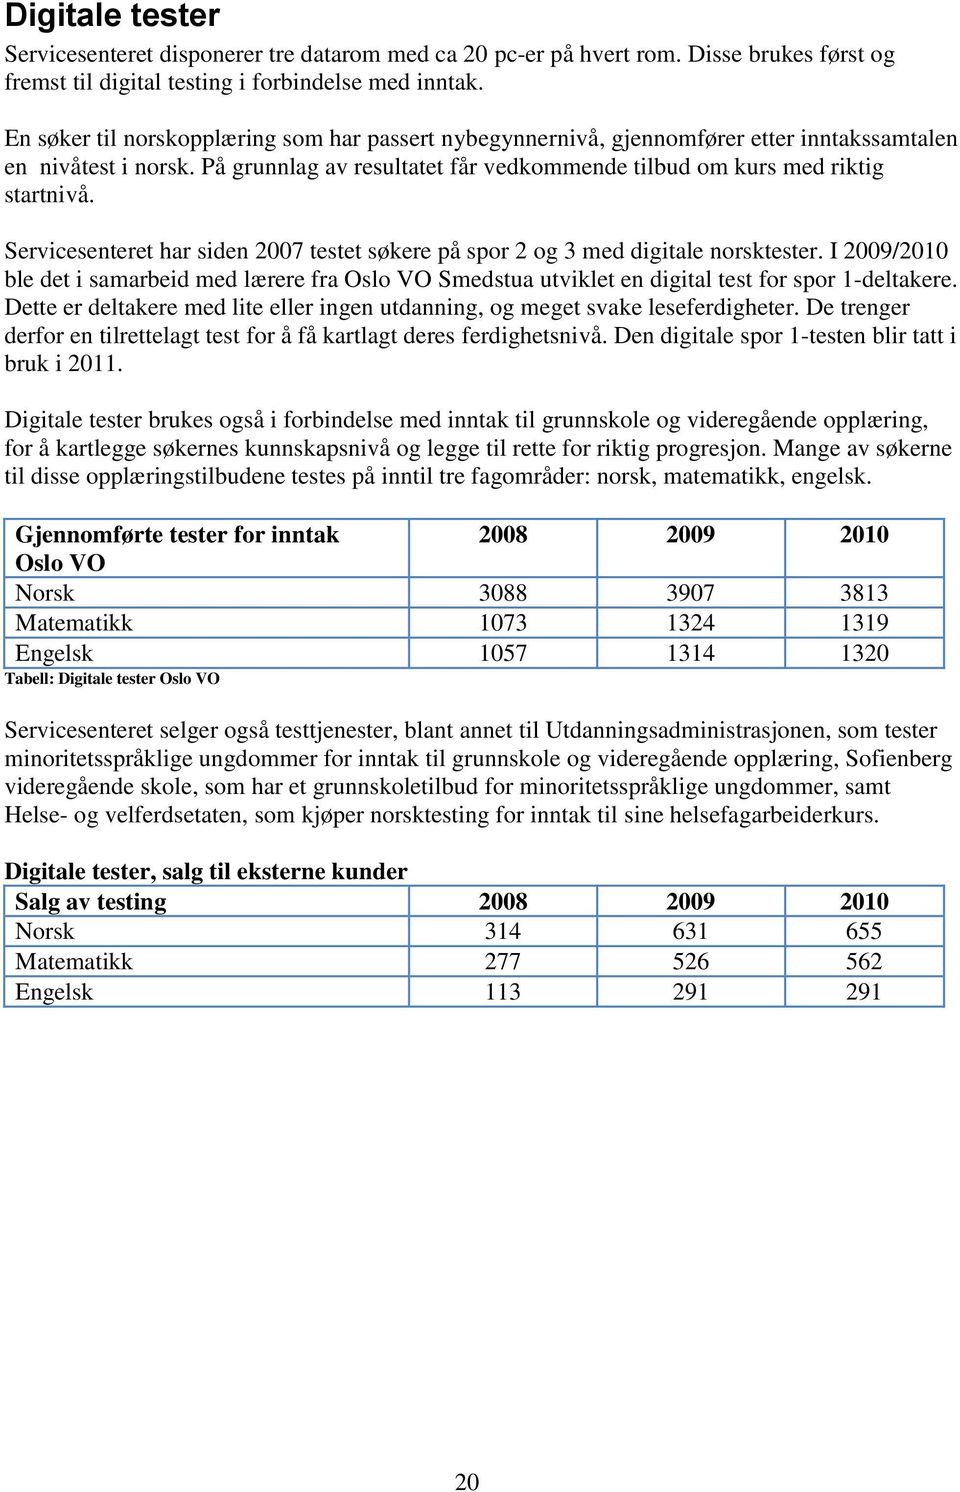 Servicesenteret har siden 2007 testet søkere på spor 2 og 3 med digitale norsktester. I 2009/2010 ble det i samarbeid med lærere fra Oslo VO Smedstua utviklet en digital test for spor 1-deltakere.